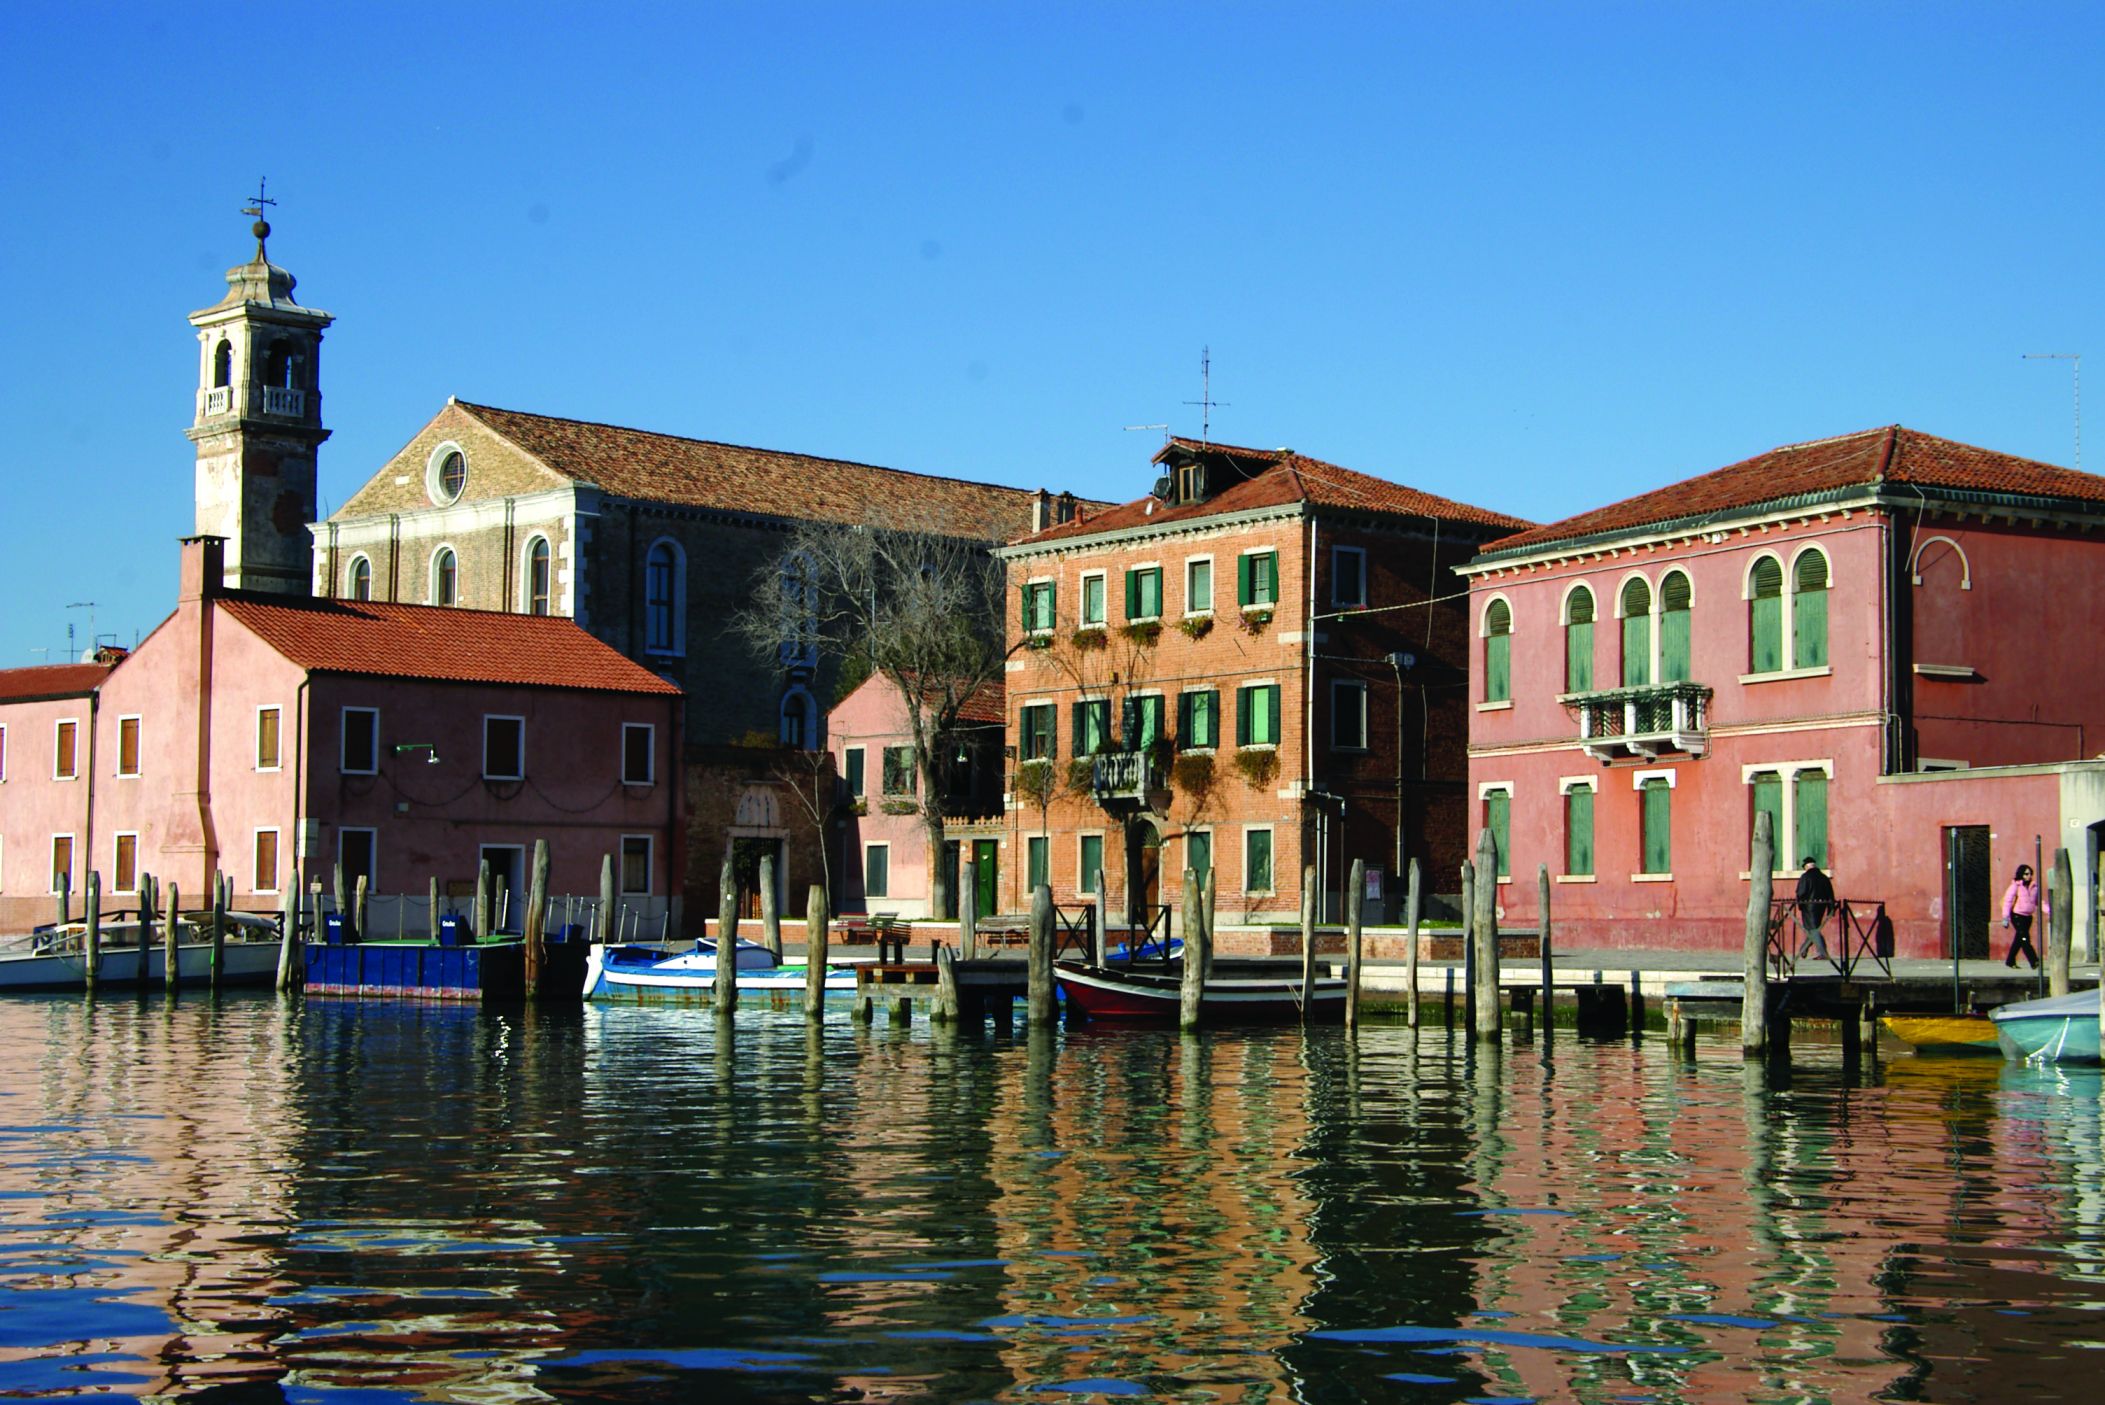 Maisons typiques de l'ile de Murano.